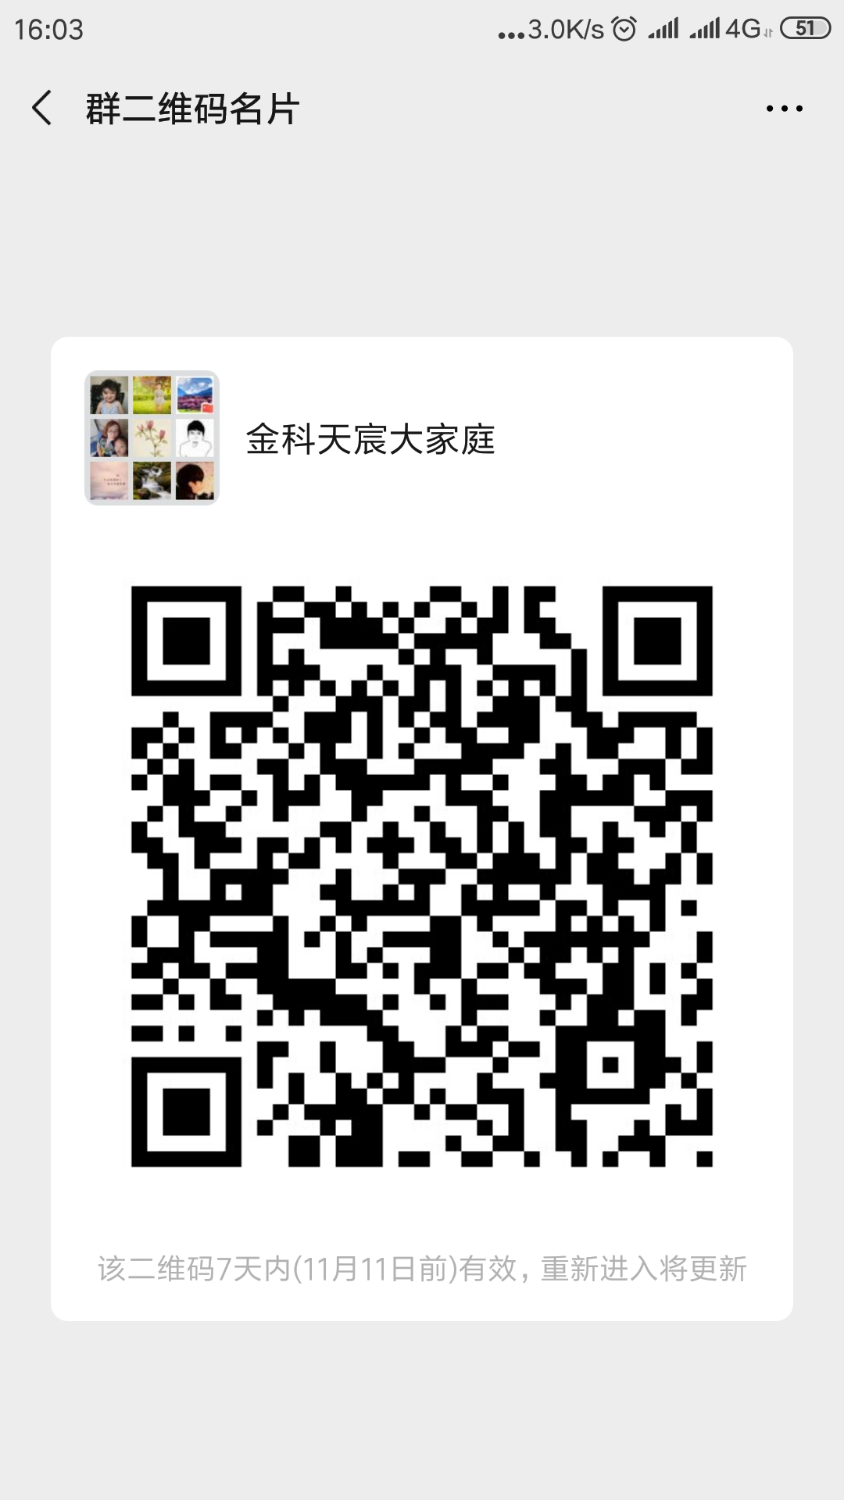 Screenshot_2019-11-04-16-03-34-592_com.tencent.mm.png